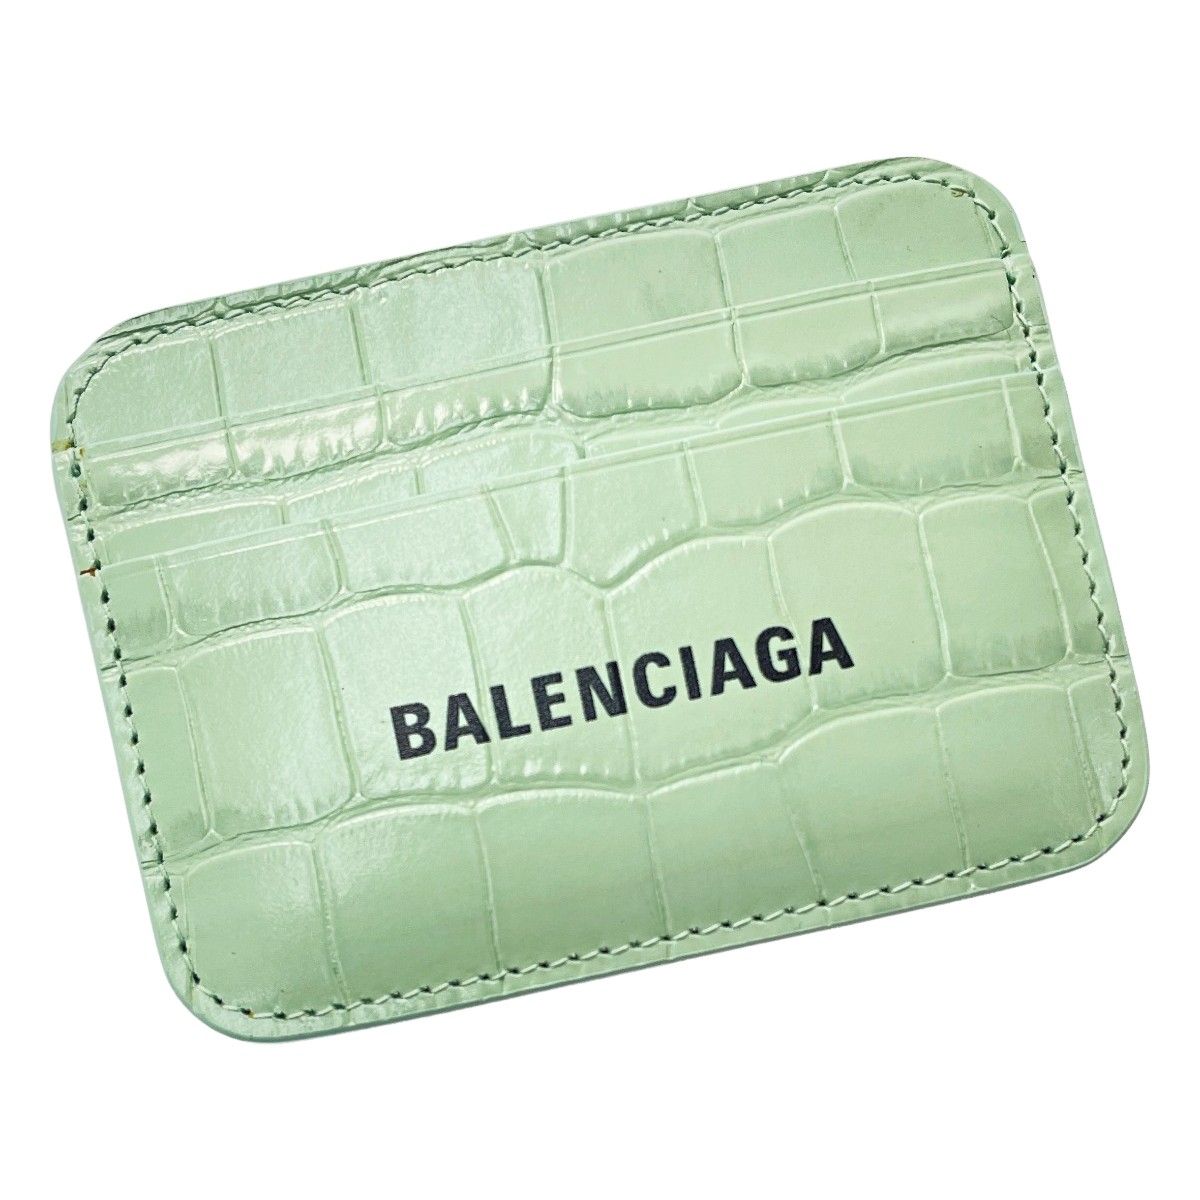 BALENCIAGA バレンシアガ ・カードケース - 小物